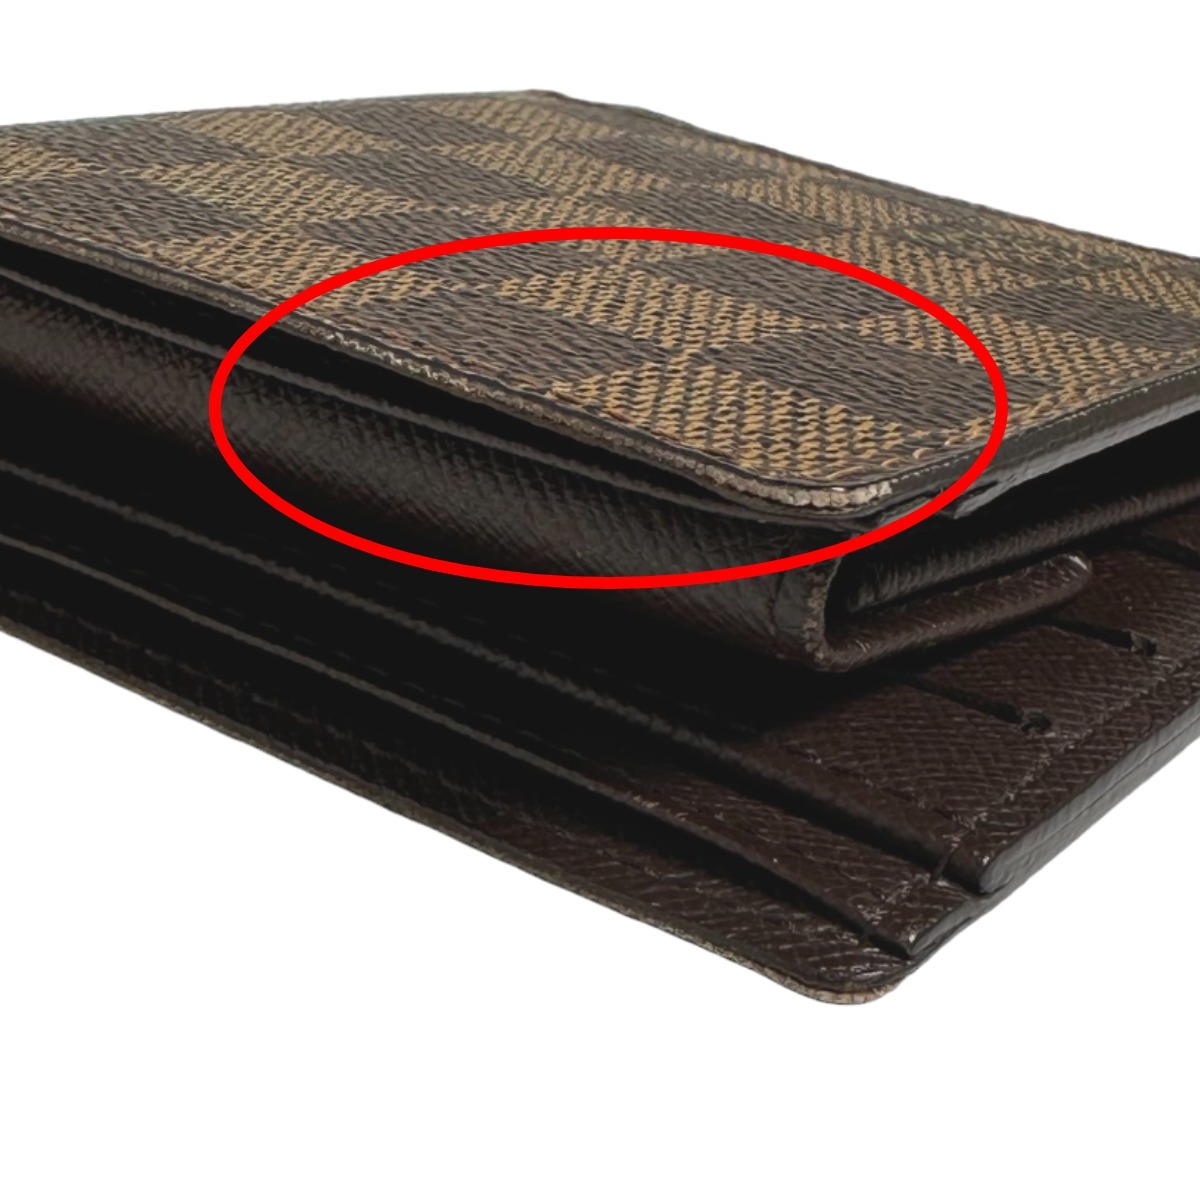 ルイヴィトン 二つ折り財布 N61675 ポルトフォイユ・マルコ ダミエ カード用ポケット付2つ折財布 LOUIS VUITTON ブラウン ユニセックス_画像4